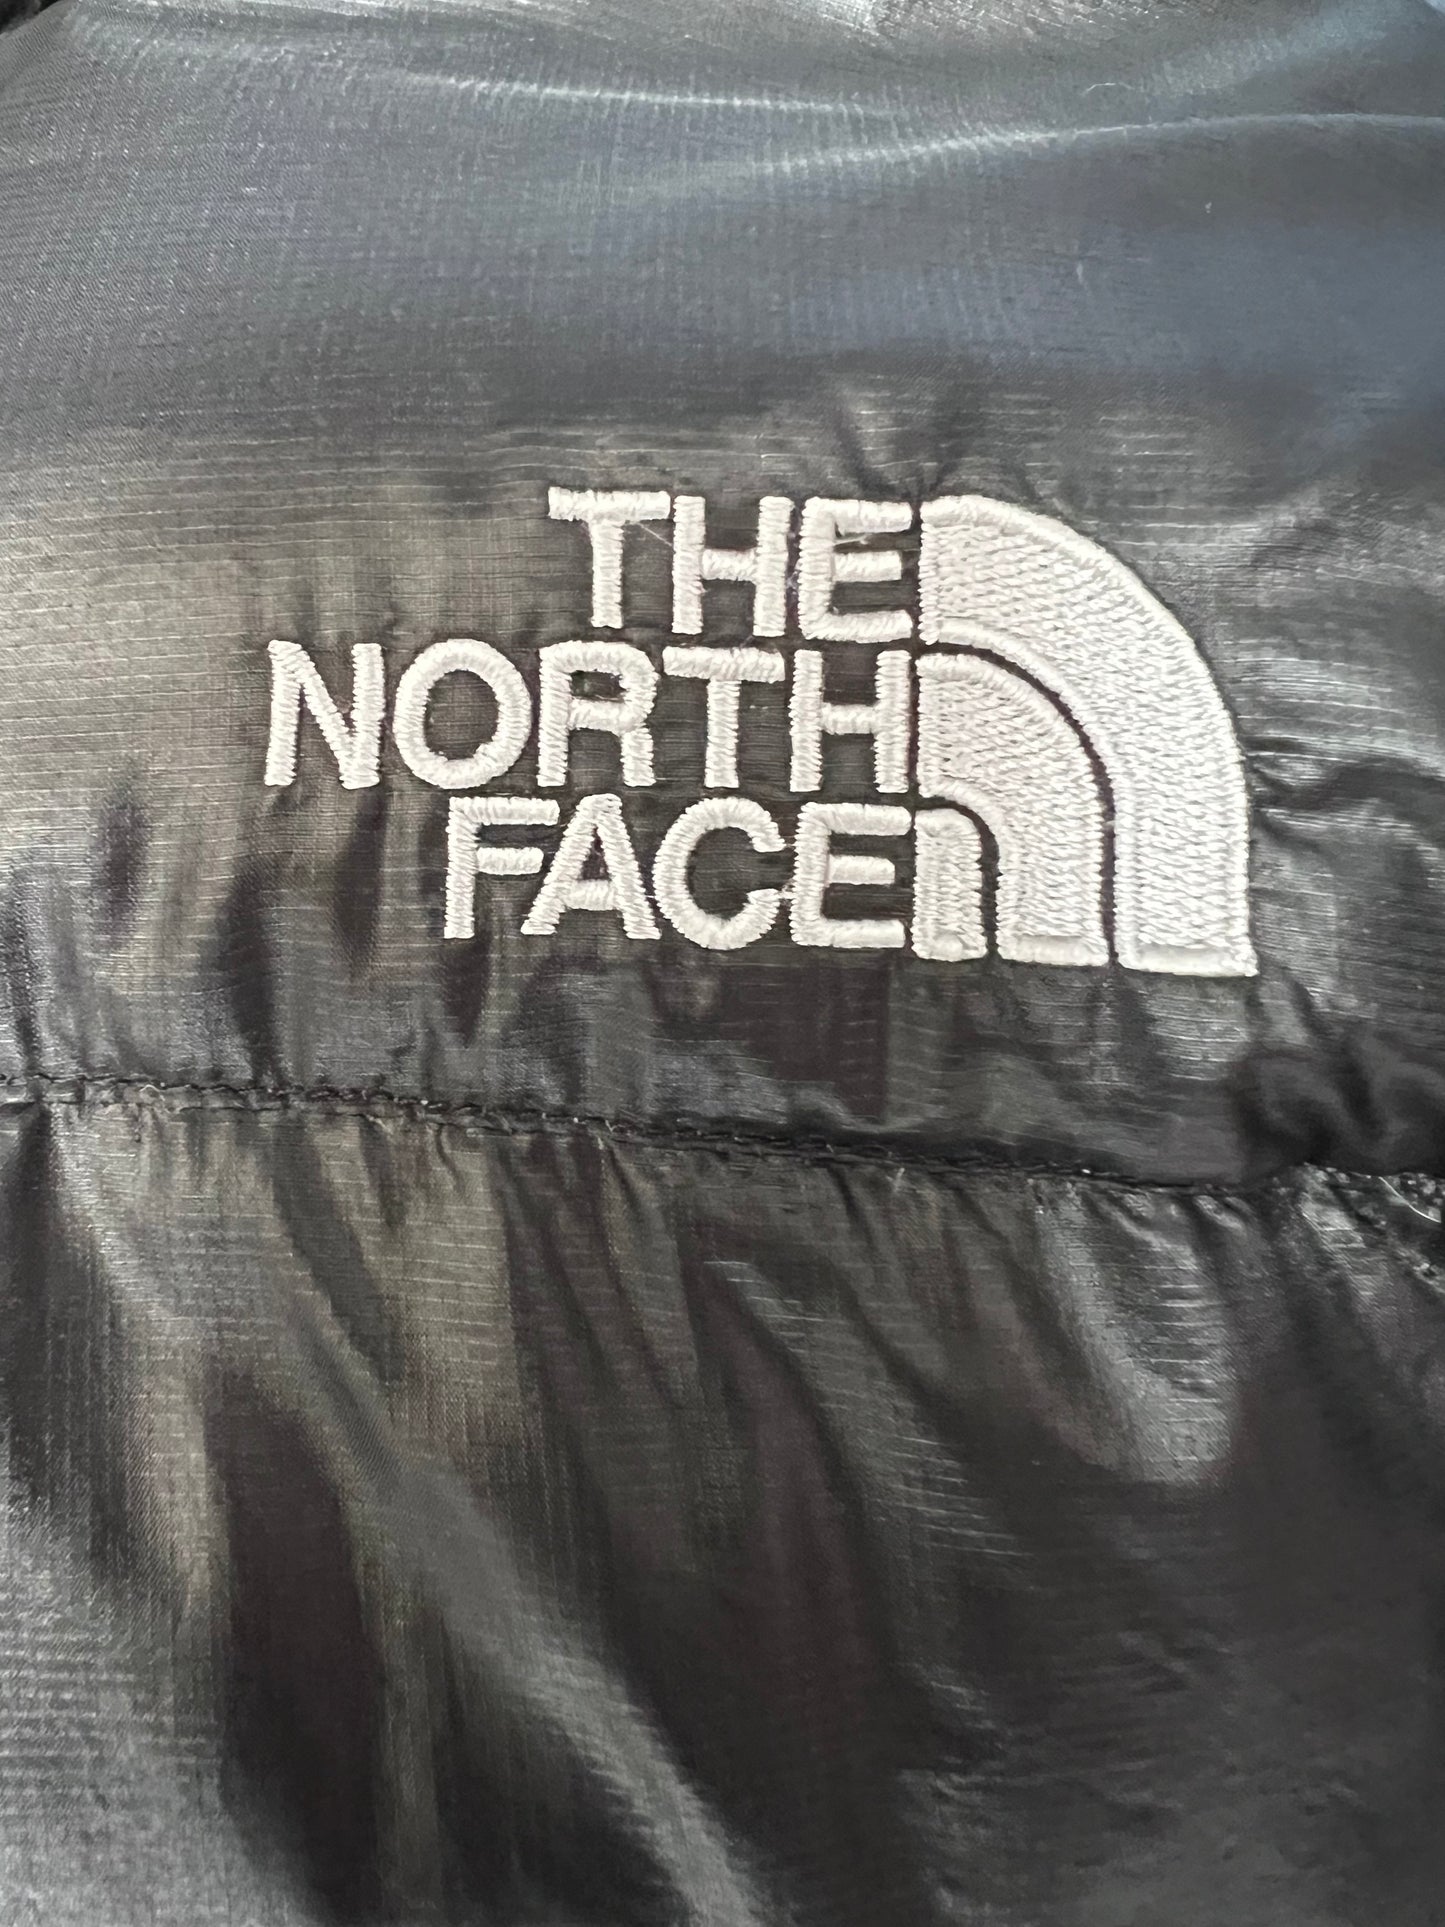 10046【THE NORTH FACE】ザノースフェイス メンズ サミットシリーズ アコンカグア ダウンジャケット ブラック 85